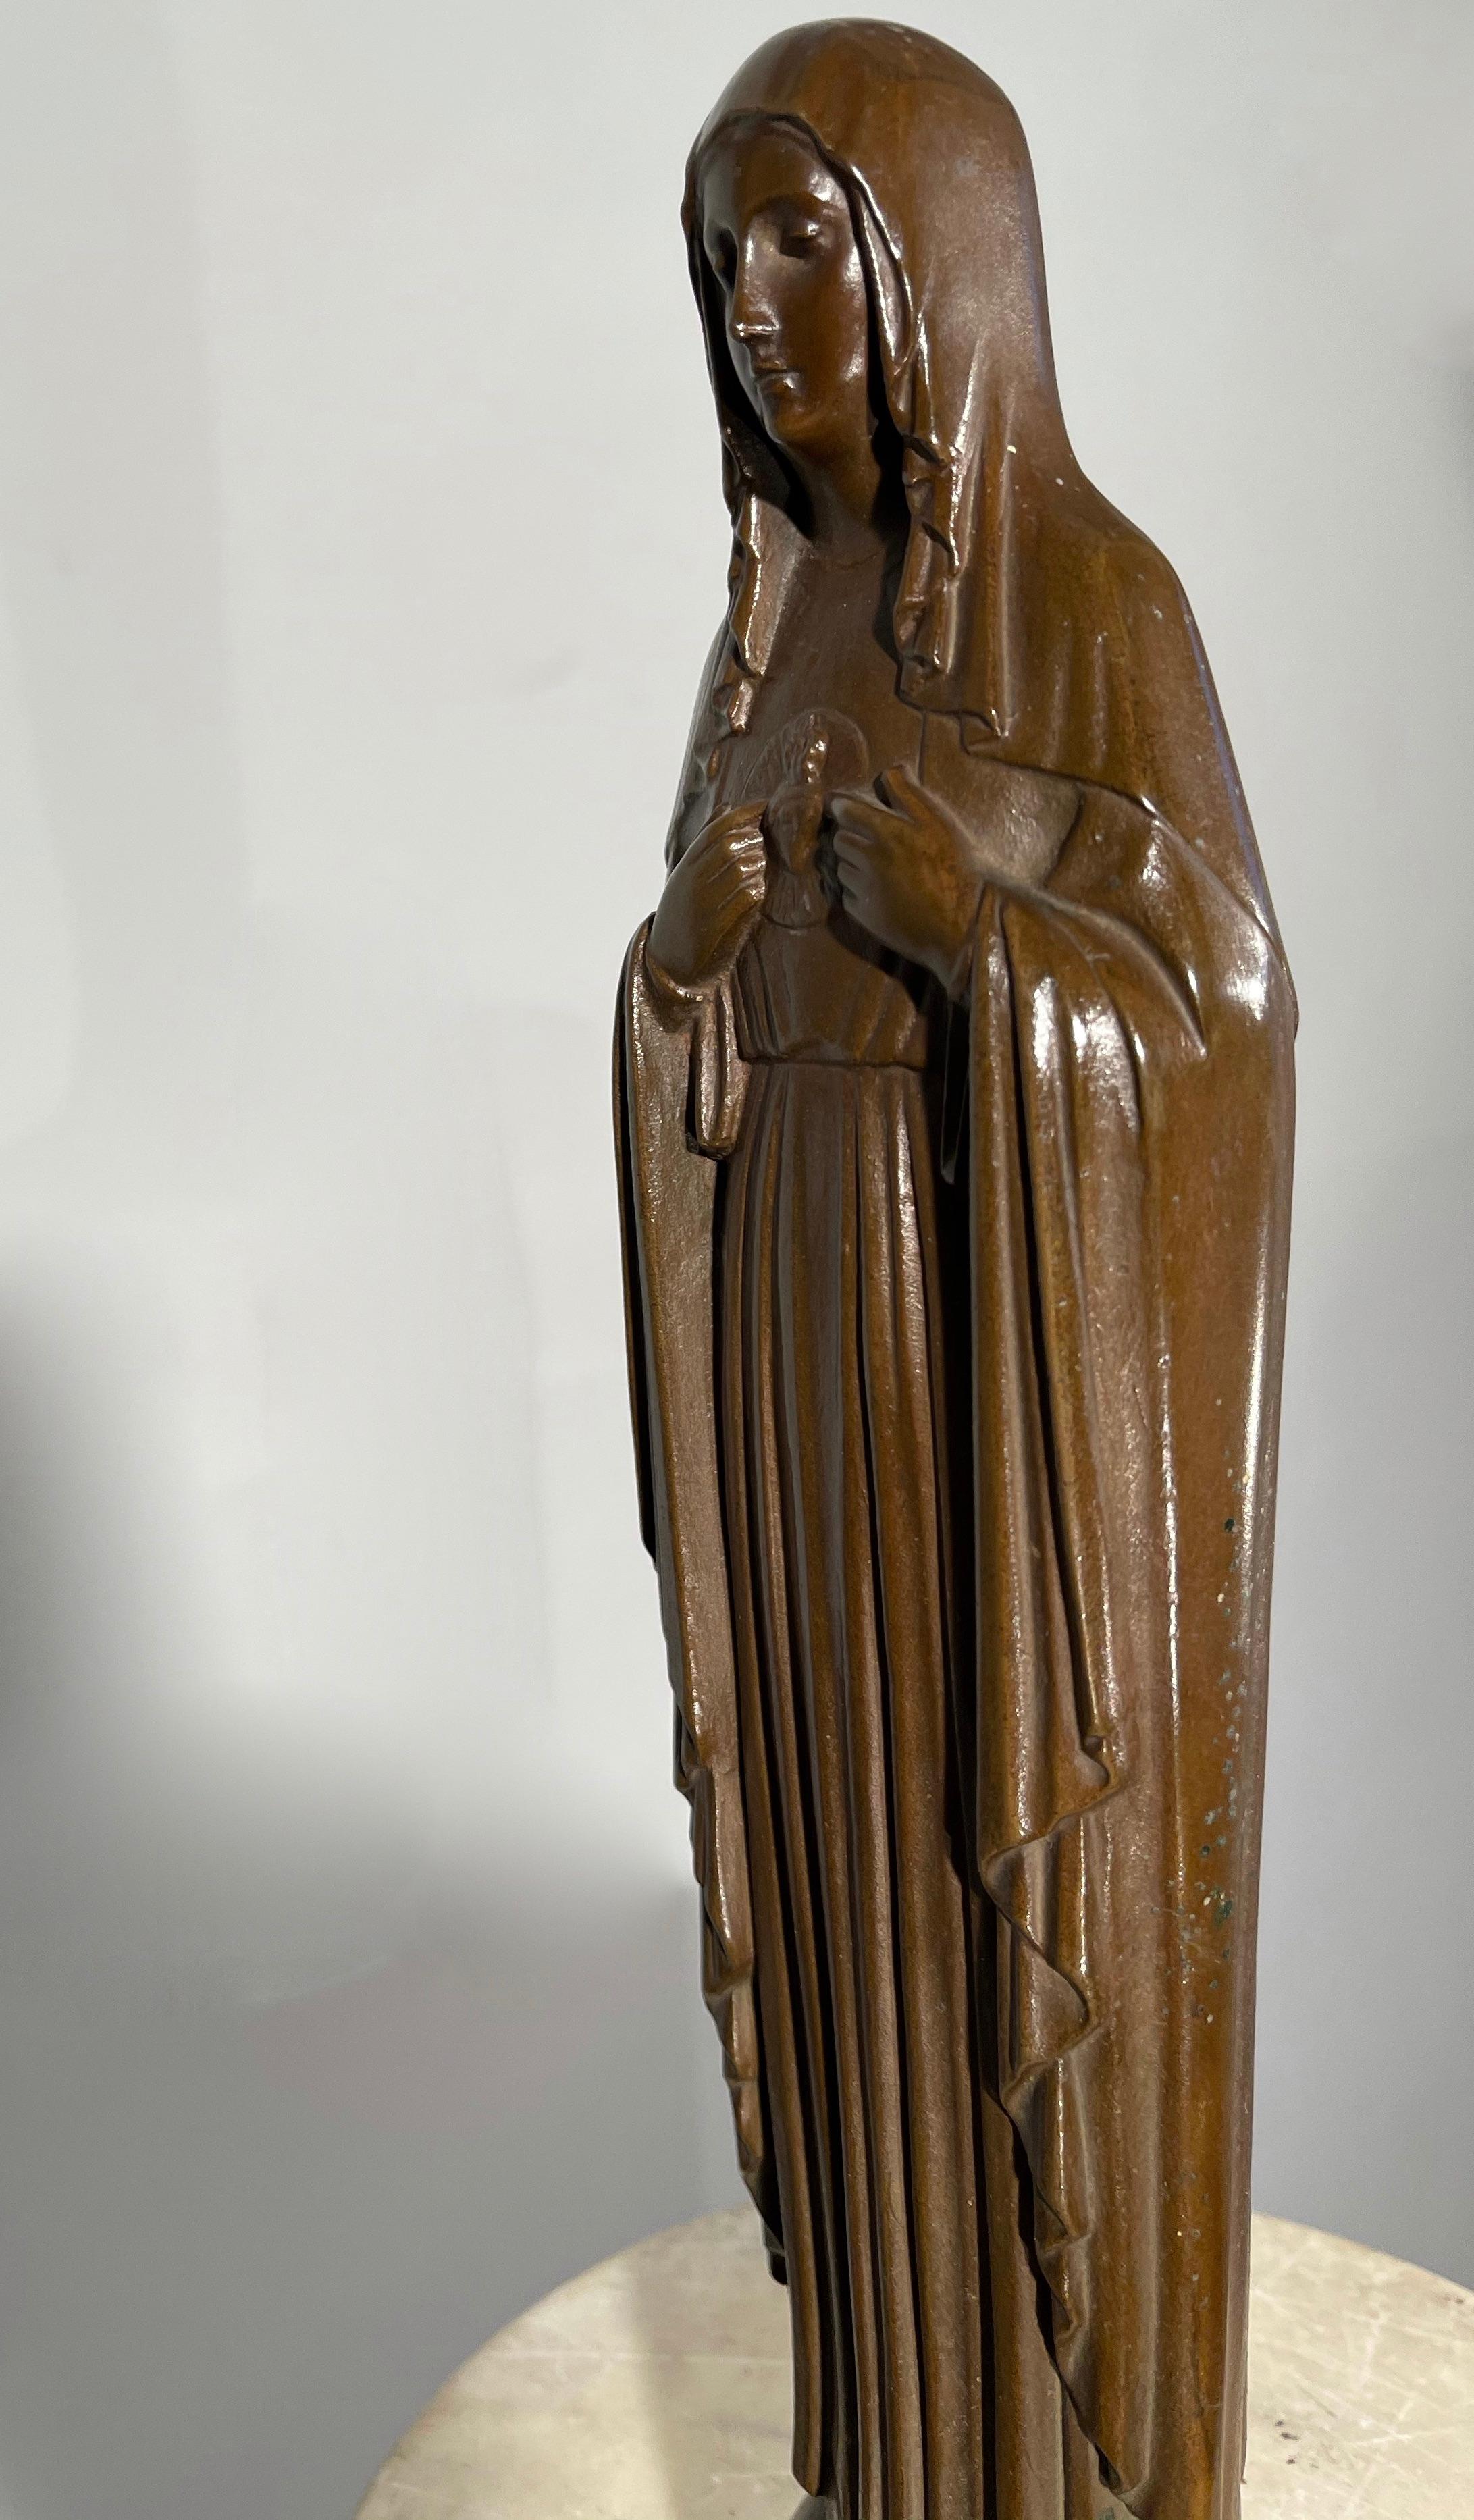 Merveilleuse qualité, Vierge Marie en bronze avec le symbole du cœur saint sur sa poitrine. 

Si vous êtes un collectionneur d'objets religieux anciens et de qualité supérieure, cette Vierge Marie en bronze fabriquée à la main pourrait bientôt